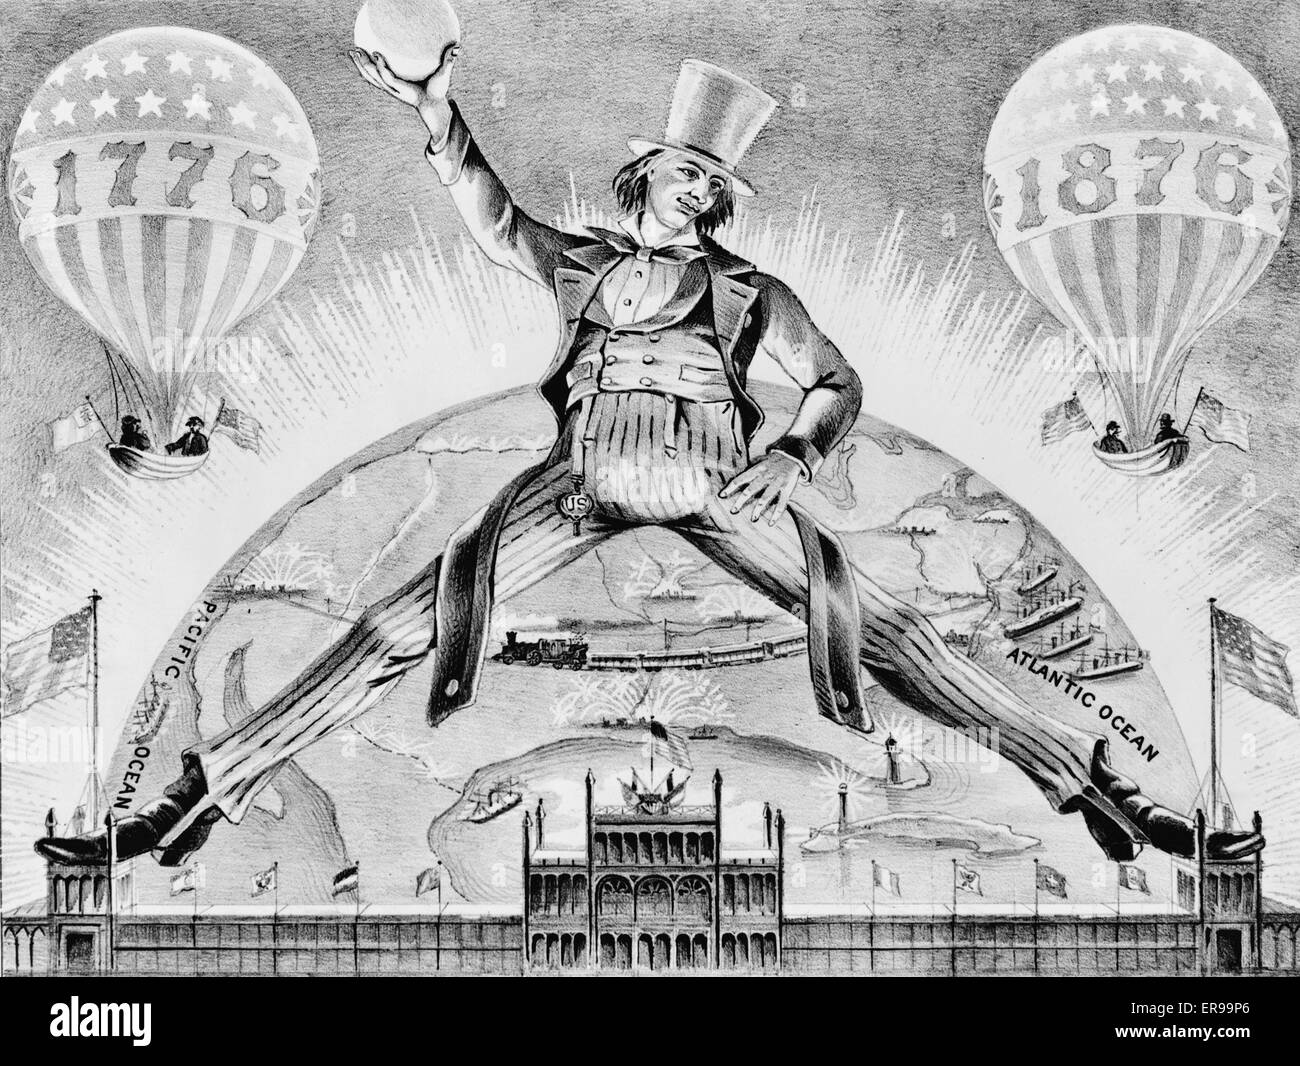 Die Schrittweite des Jahrhundert. Eine Karikatur feiert den hundertsten Jahrestag der Vereinigten Staaten. Die Figur des Bruder Jonathan, ein Vorläufer des Onkel Sam, überspannt die Türme des Hauptgebäudes an der Weltausstellung in Philadelphia 1876. Zwischen seinen Füßen den Norden bin Stockfoto